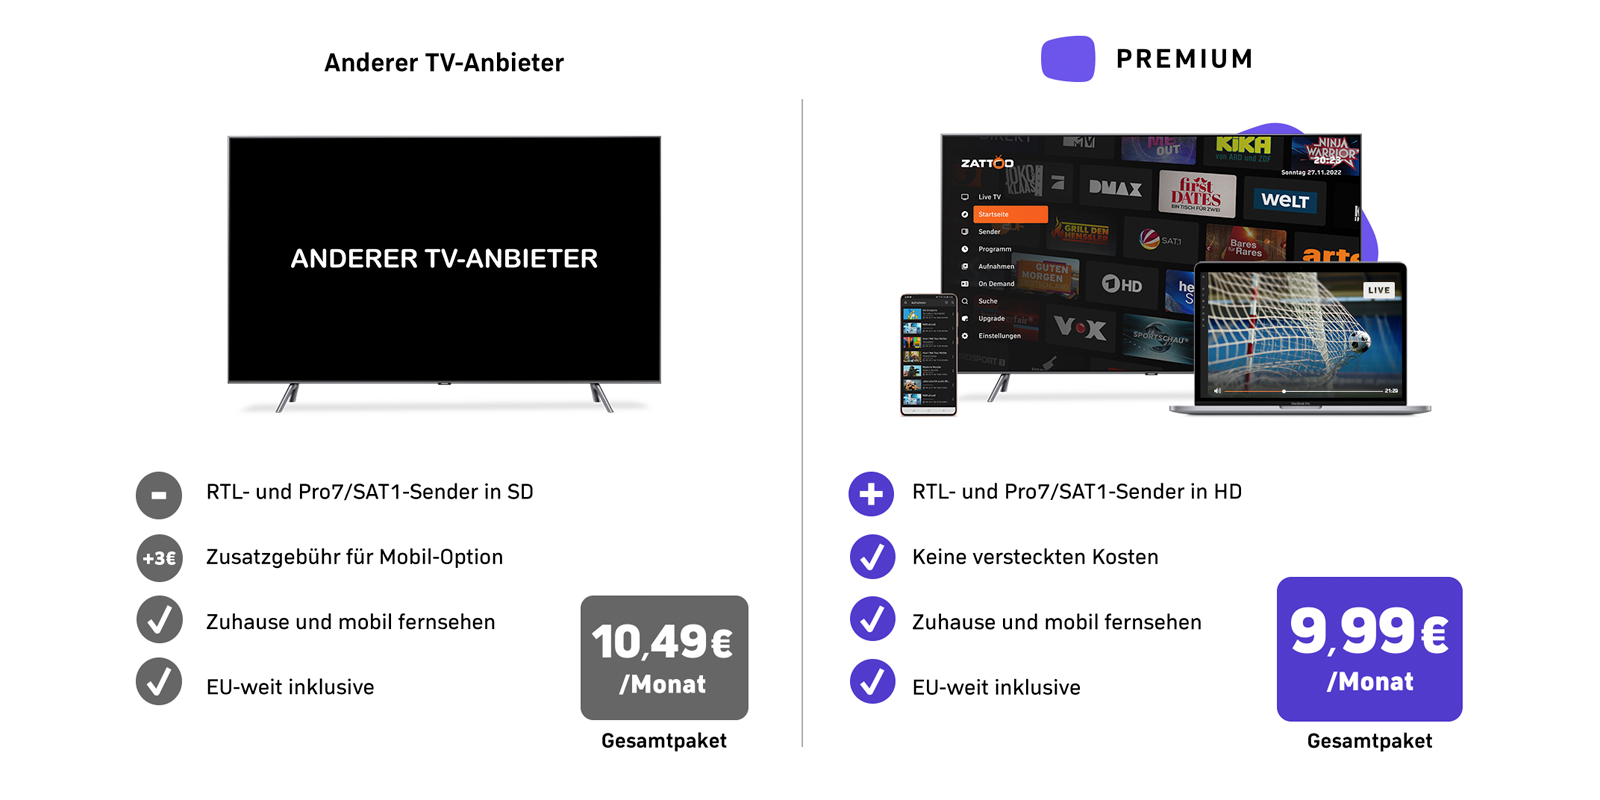 Zattoo Premium Sparen and Flexible HD-TV-Streaming genießen